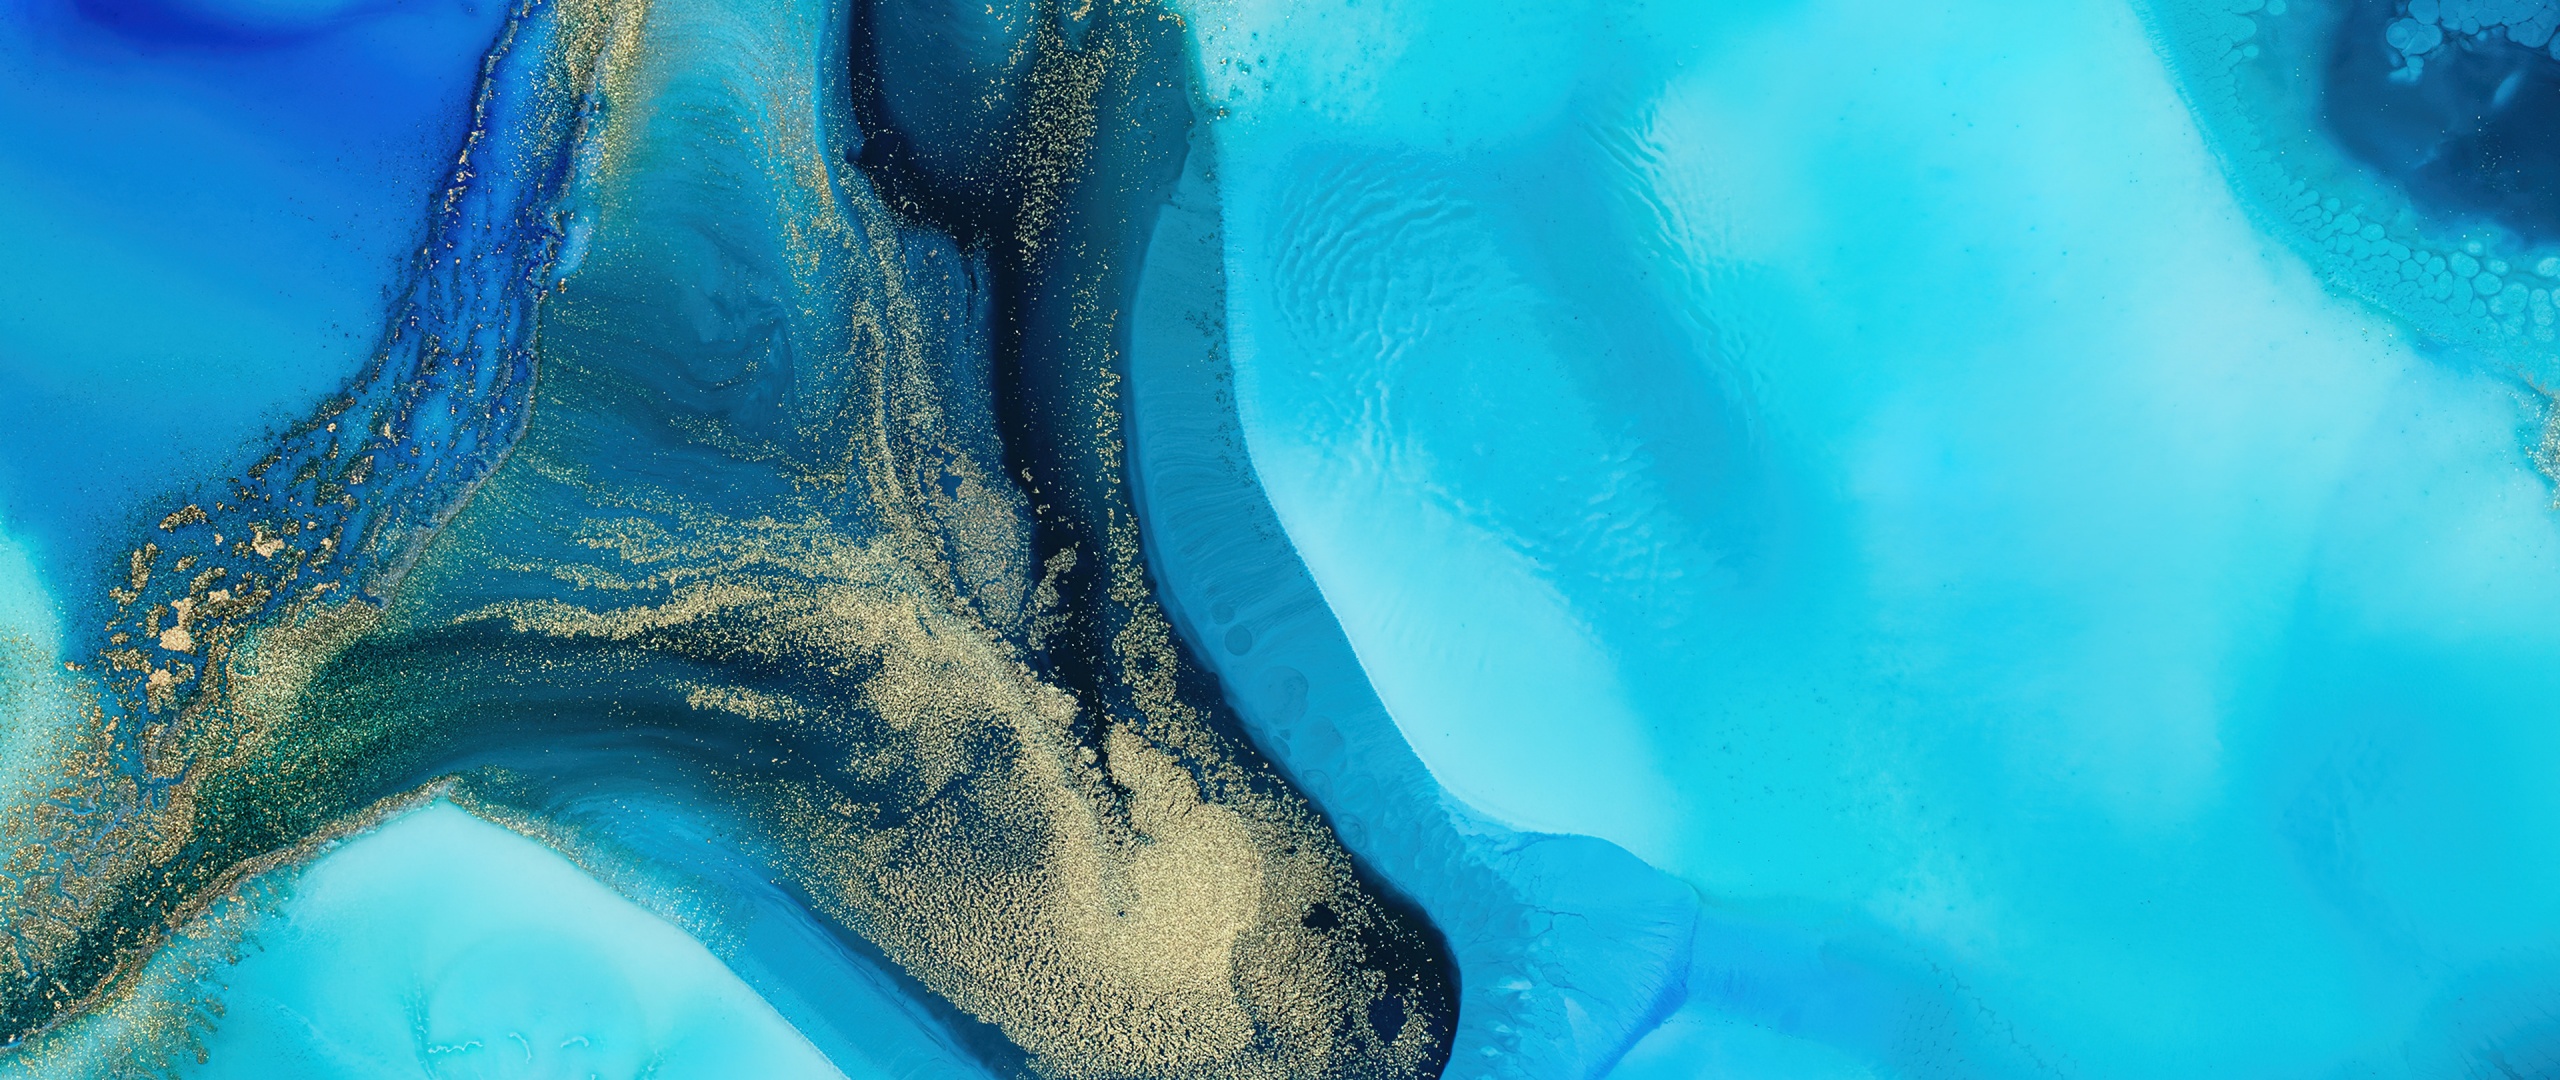 Mi Pad 5 Pro Wallpaper 4K, Blue background, Liquid art